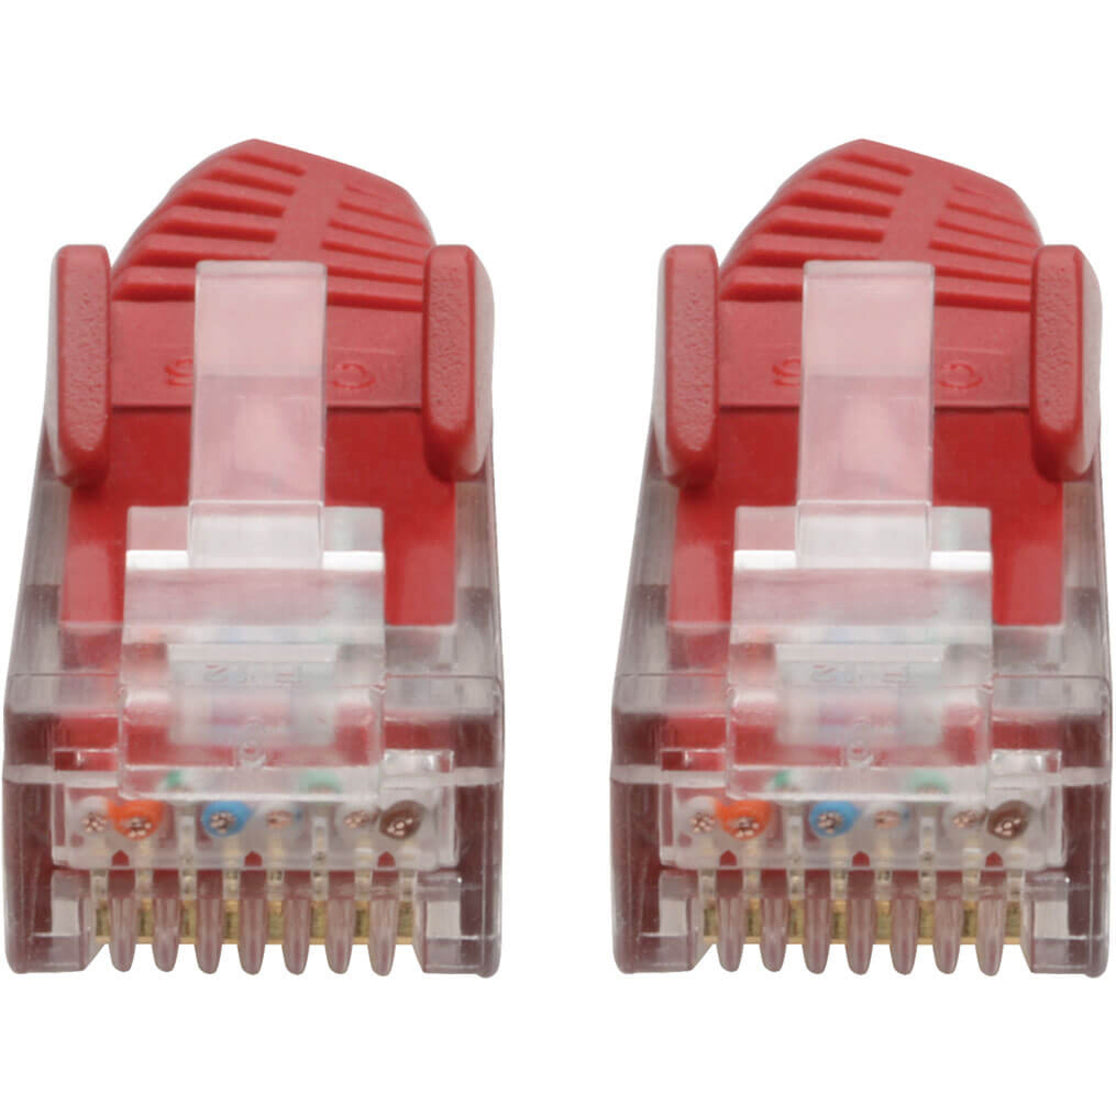 Tripp Lite N201-004-RD Cat.6 UTP Patch Network Cable 4 ft Gigabit Snagless Red Tripp Lite N201-004-RD Câble de réseau Ethernet Cat.6 UTP Patch 4 pi Gigabit sans accroc Rouge